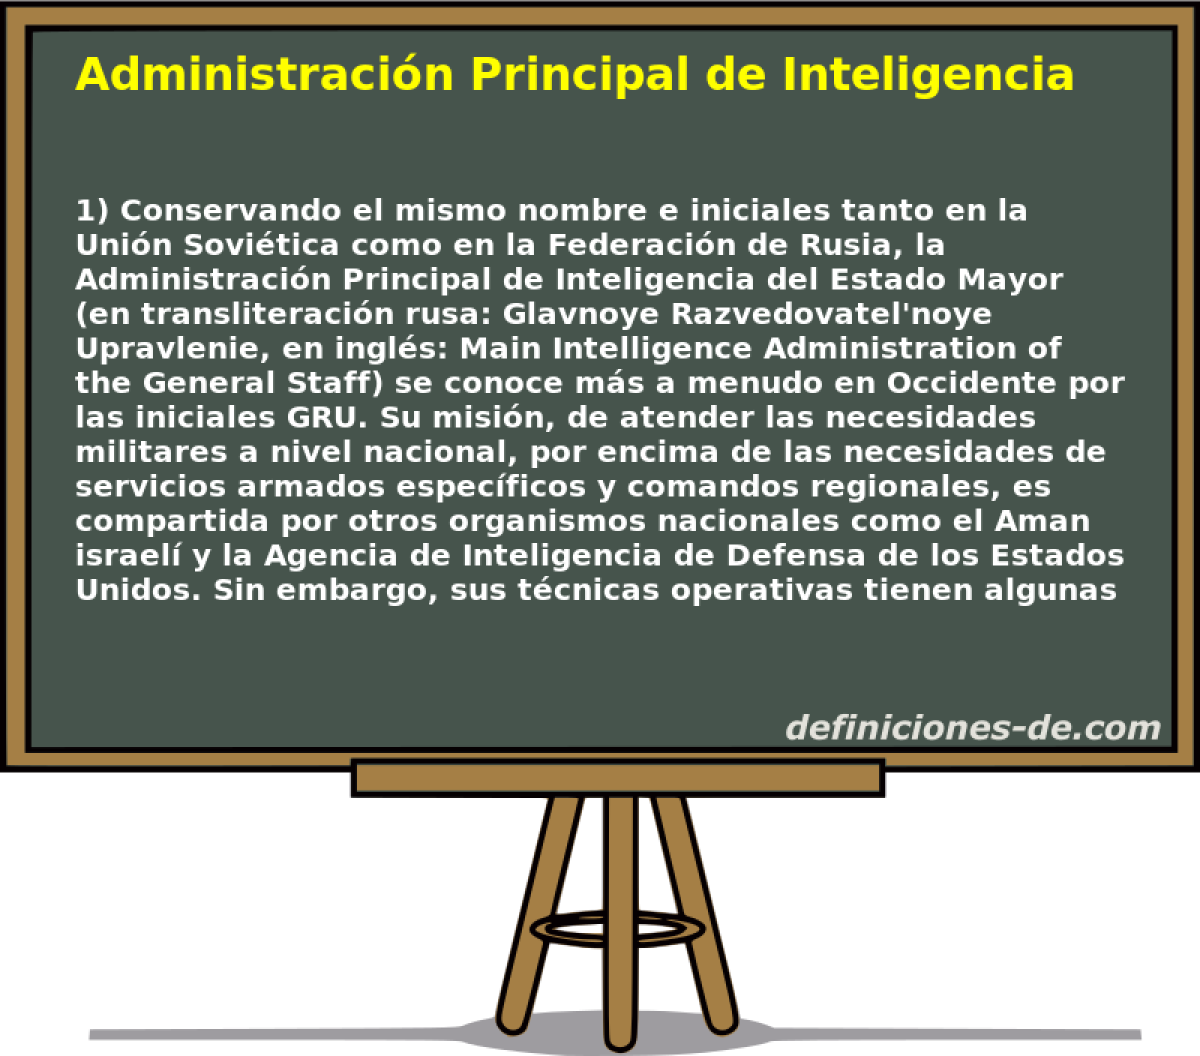 Administracin Principal de Inteligencia del Estado Mayor 